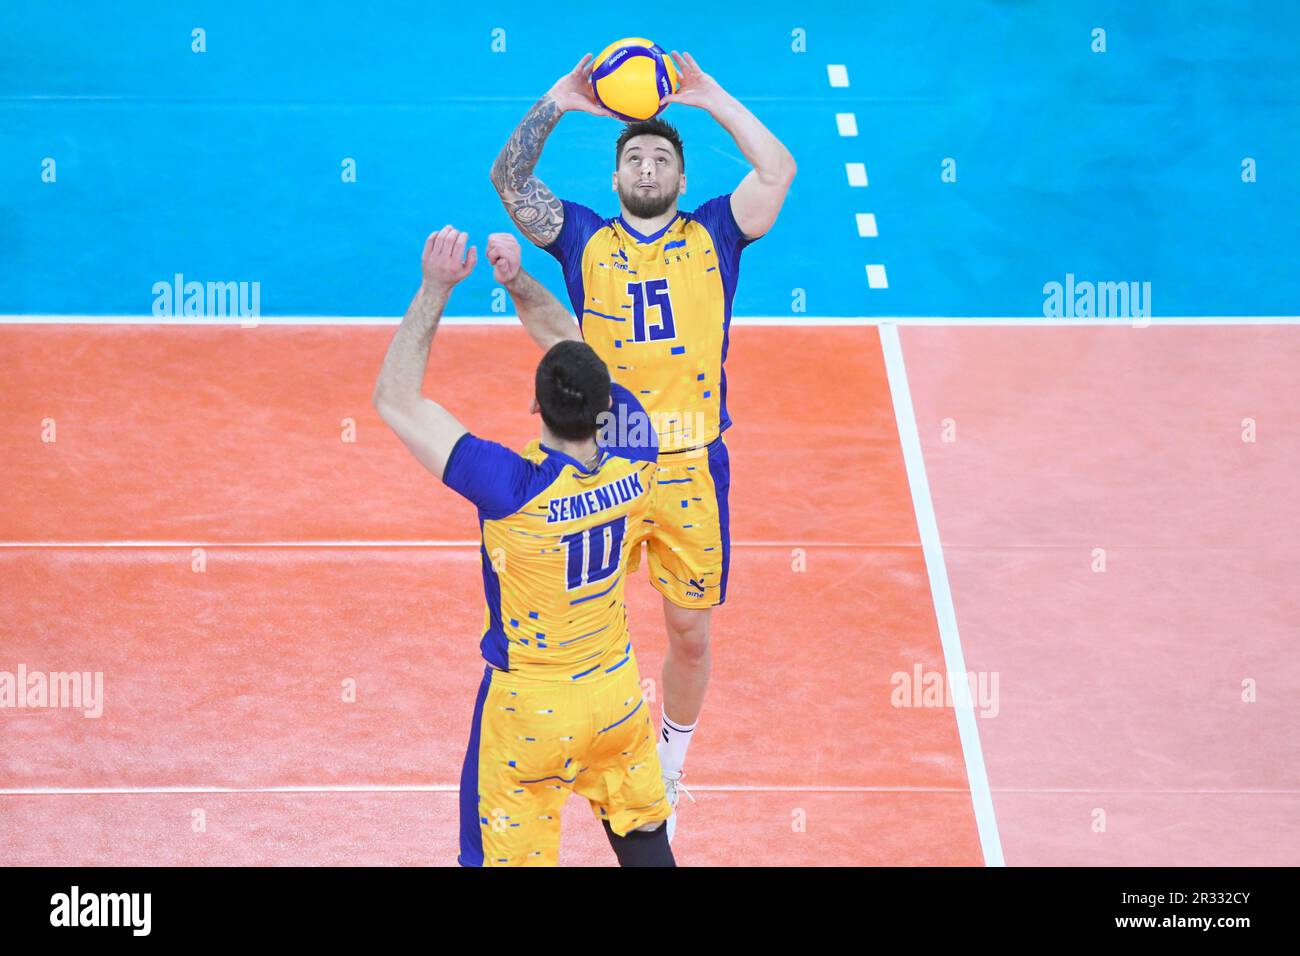 Vitaliy Shchytkov, Jurii Semeniuk (Ukraine). Volleyball-Weltmeisterschaft 2022. Viertelfinale Stockfoto